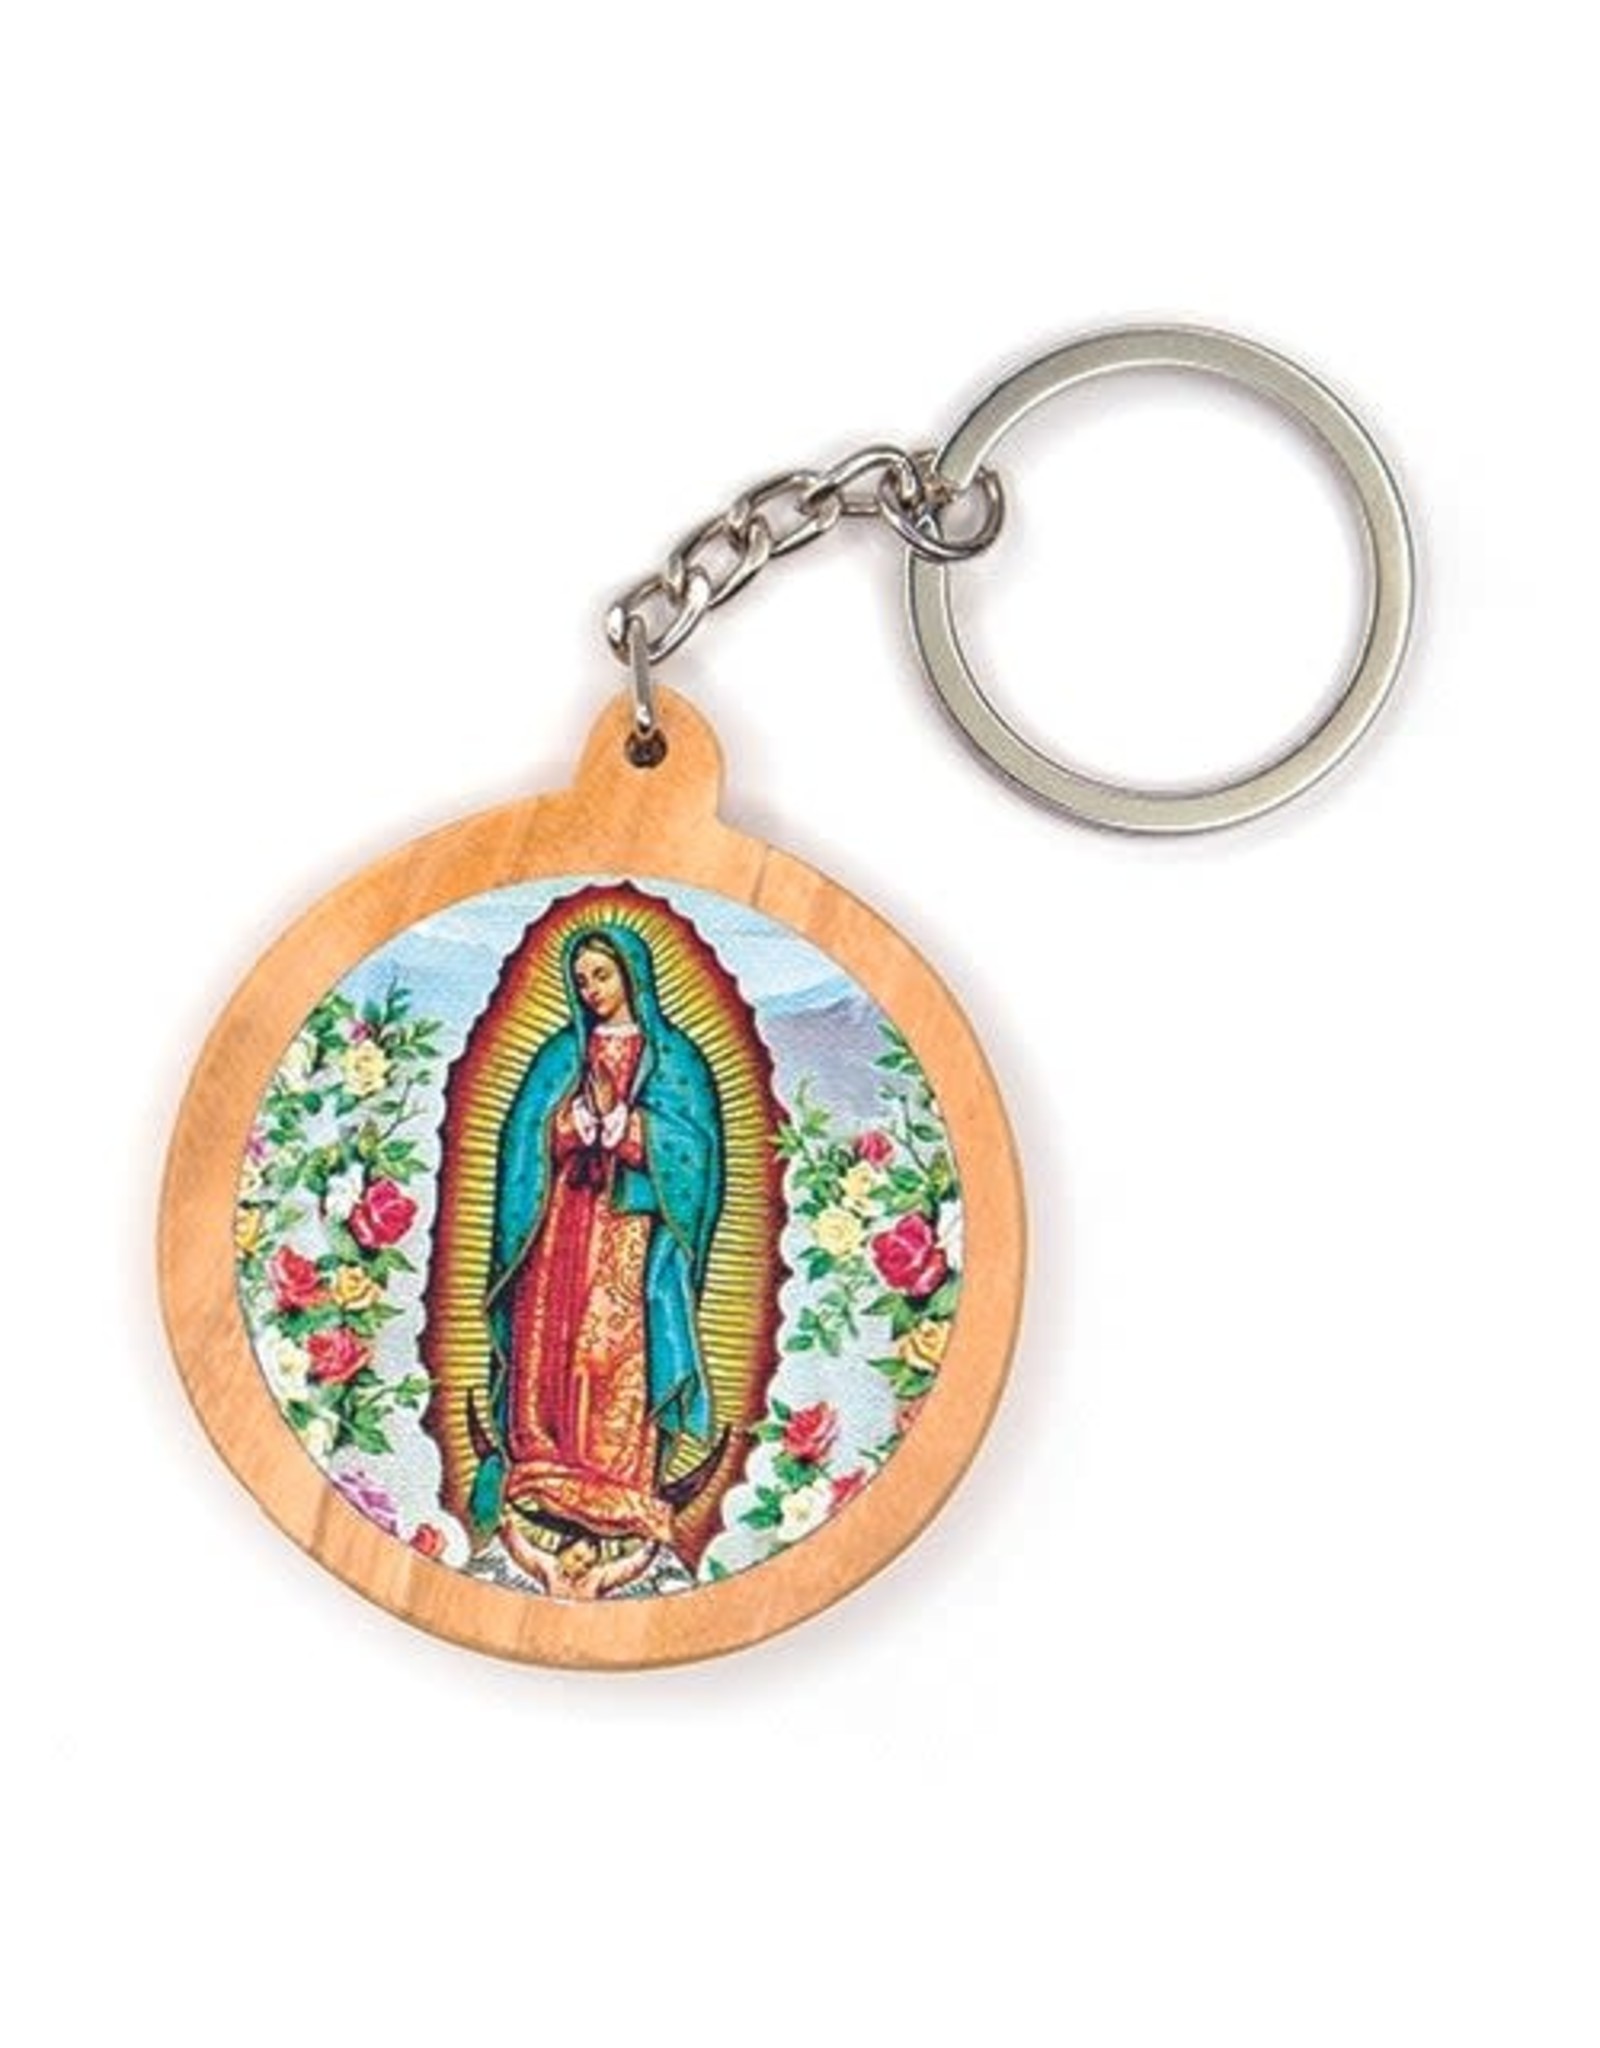 Logos Olive Wood Catholic Keychain -